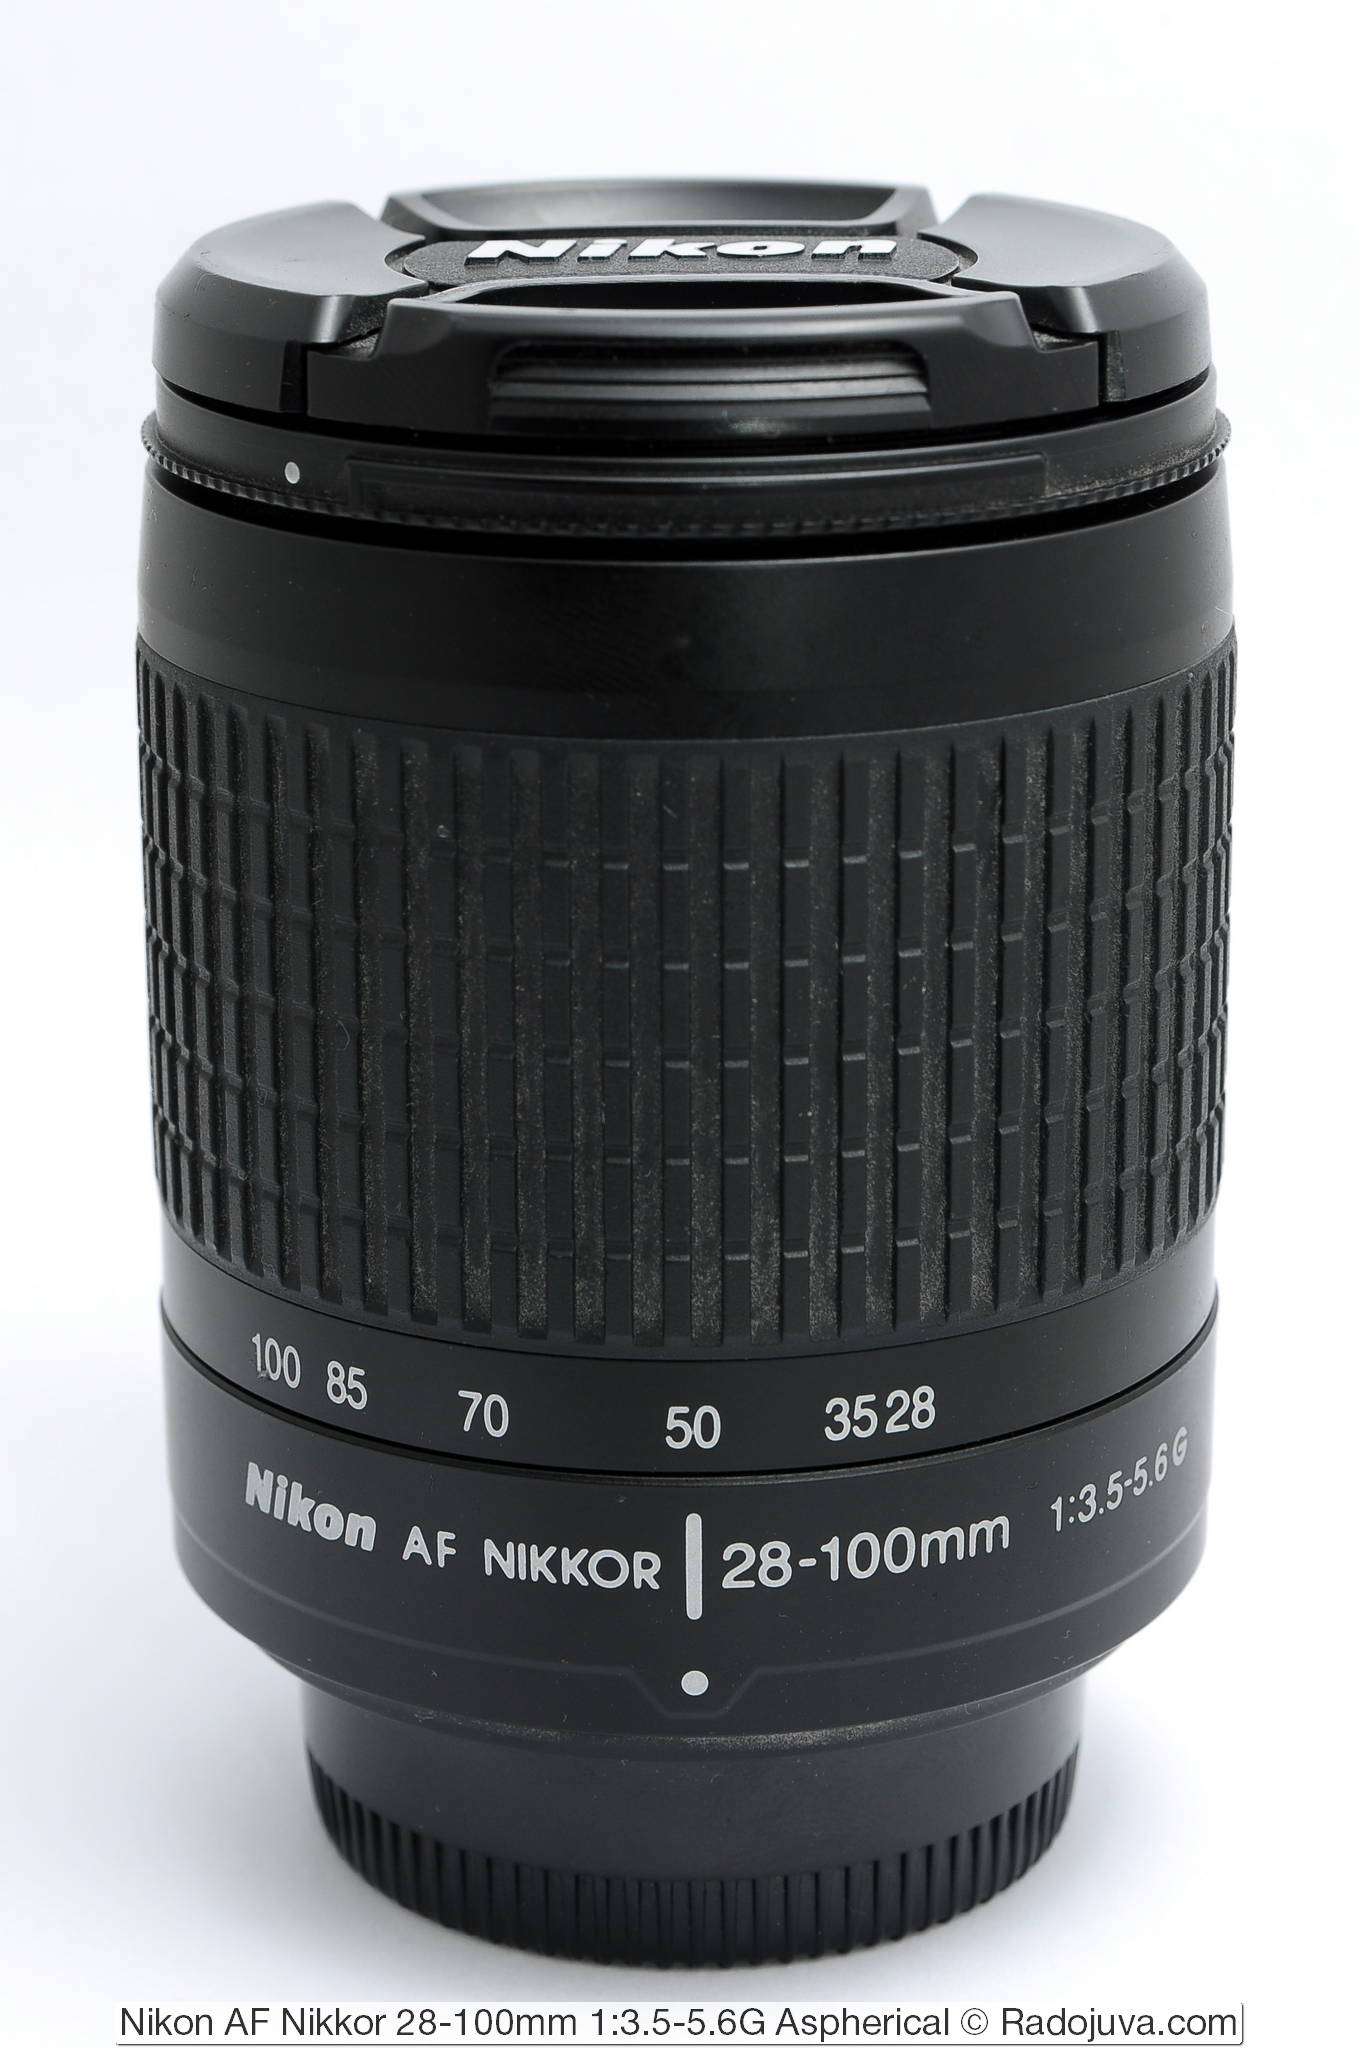 Nikon AF Nikkor 28-100mm 1:3.5-5.6G Aspherical